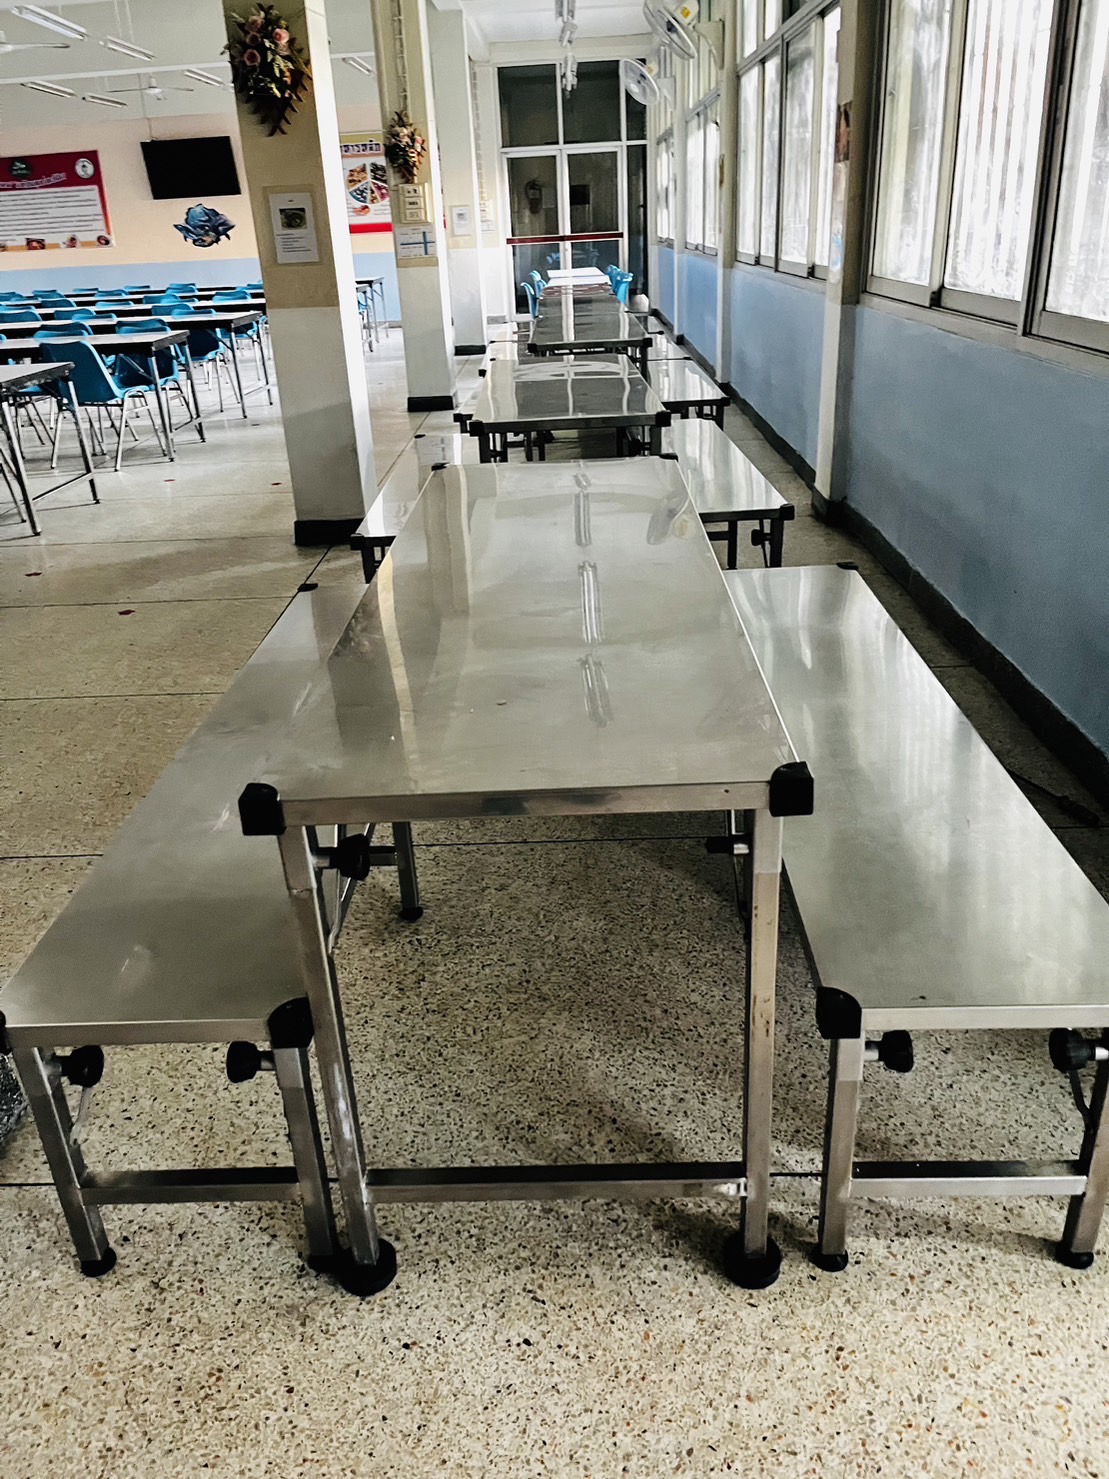 64012::SPD-T1C2-175::โต๊ะโรงอาหารสแตนเลส ขนาด w175*d60*h75 cm จำนวน1ตัว และเก้าอี้สแตนเลสยาว ขนาด w175*d40*h45 cm จำนวน2ตัว เกรด304หนา1มม. ทั้งตัว
ขาสวิงพับได้
มีกันชนทุกมุมของโต๊ะและเก้าอี้ เอสพีดี ชุดโต๊ะสแตนเลส